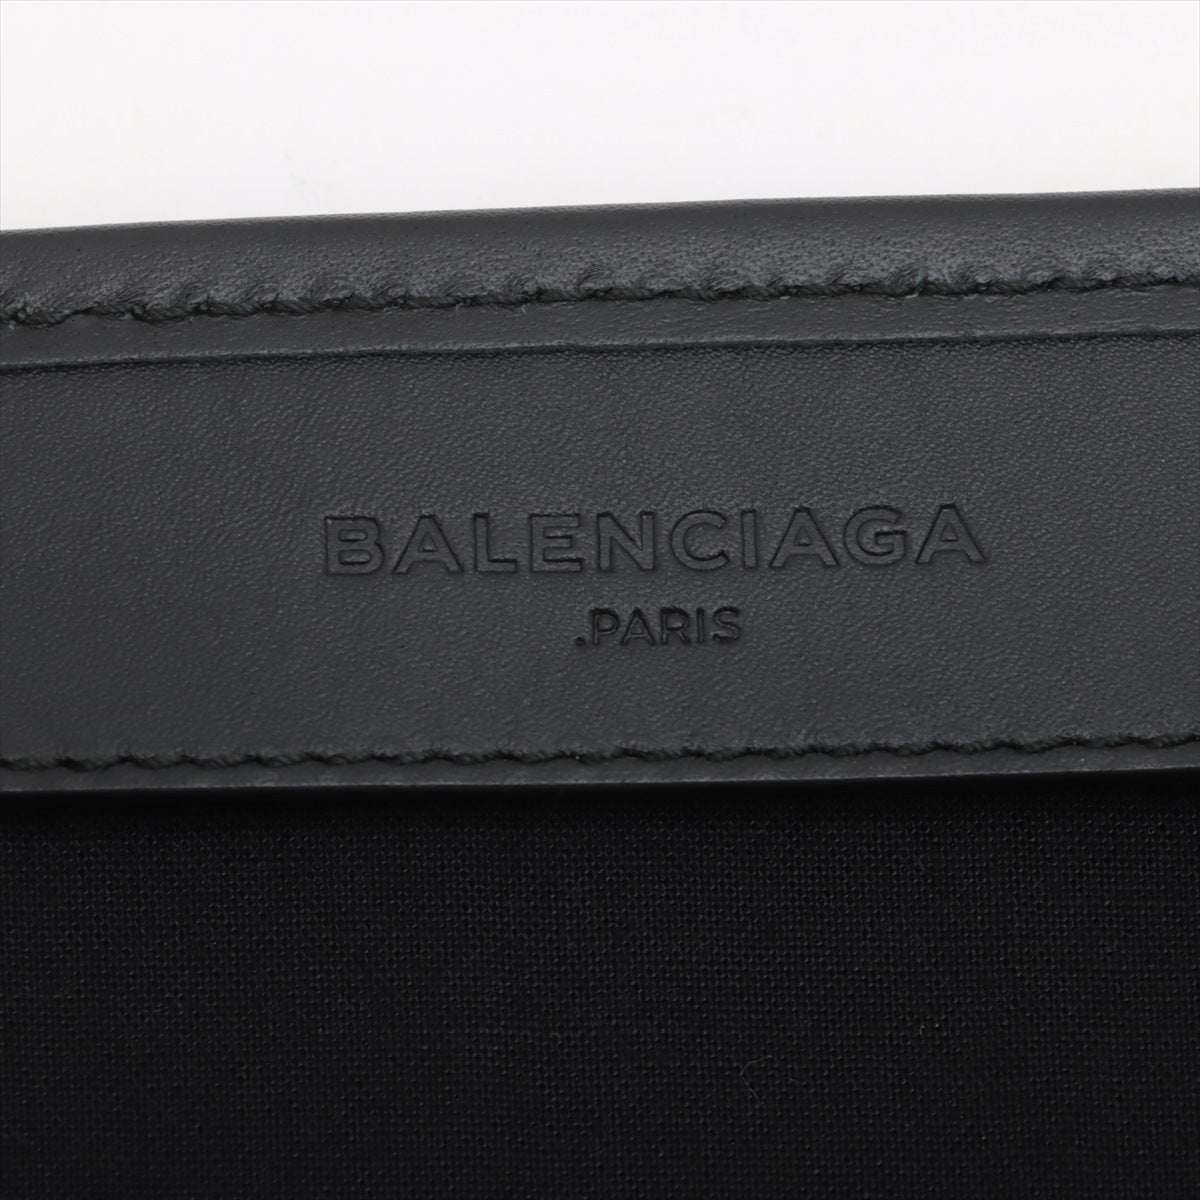 Balenciagaaga Naivikabaus Denim x Leather Handbag Naivikaba